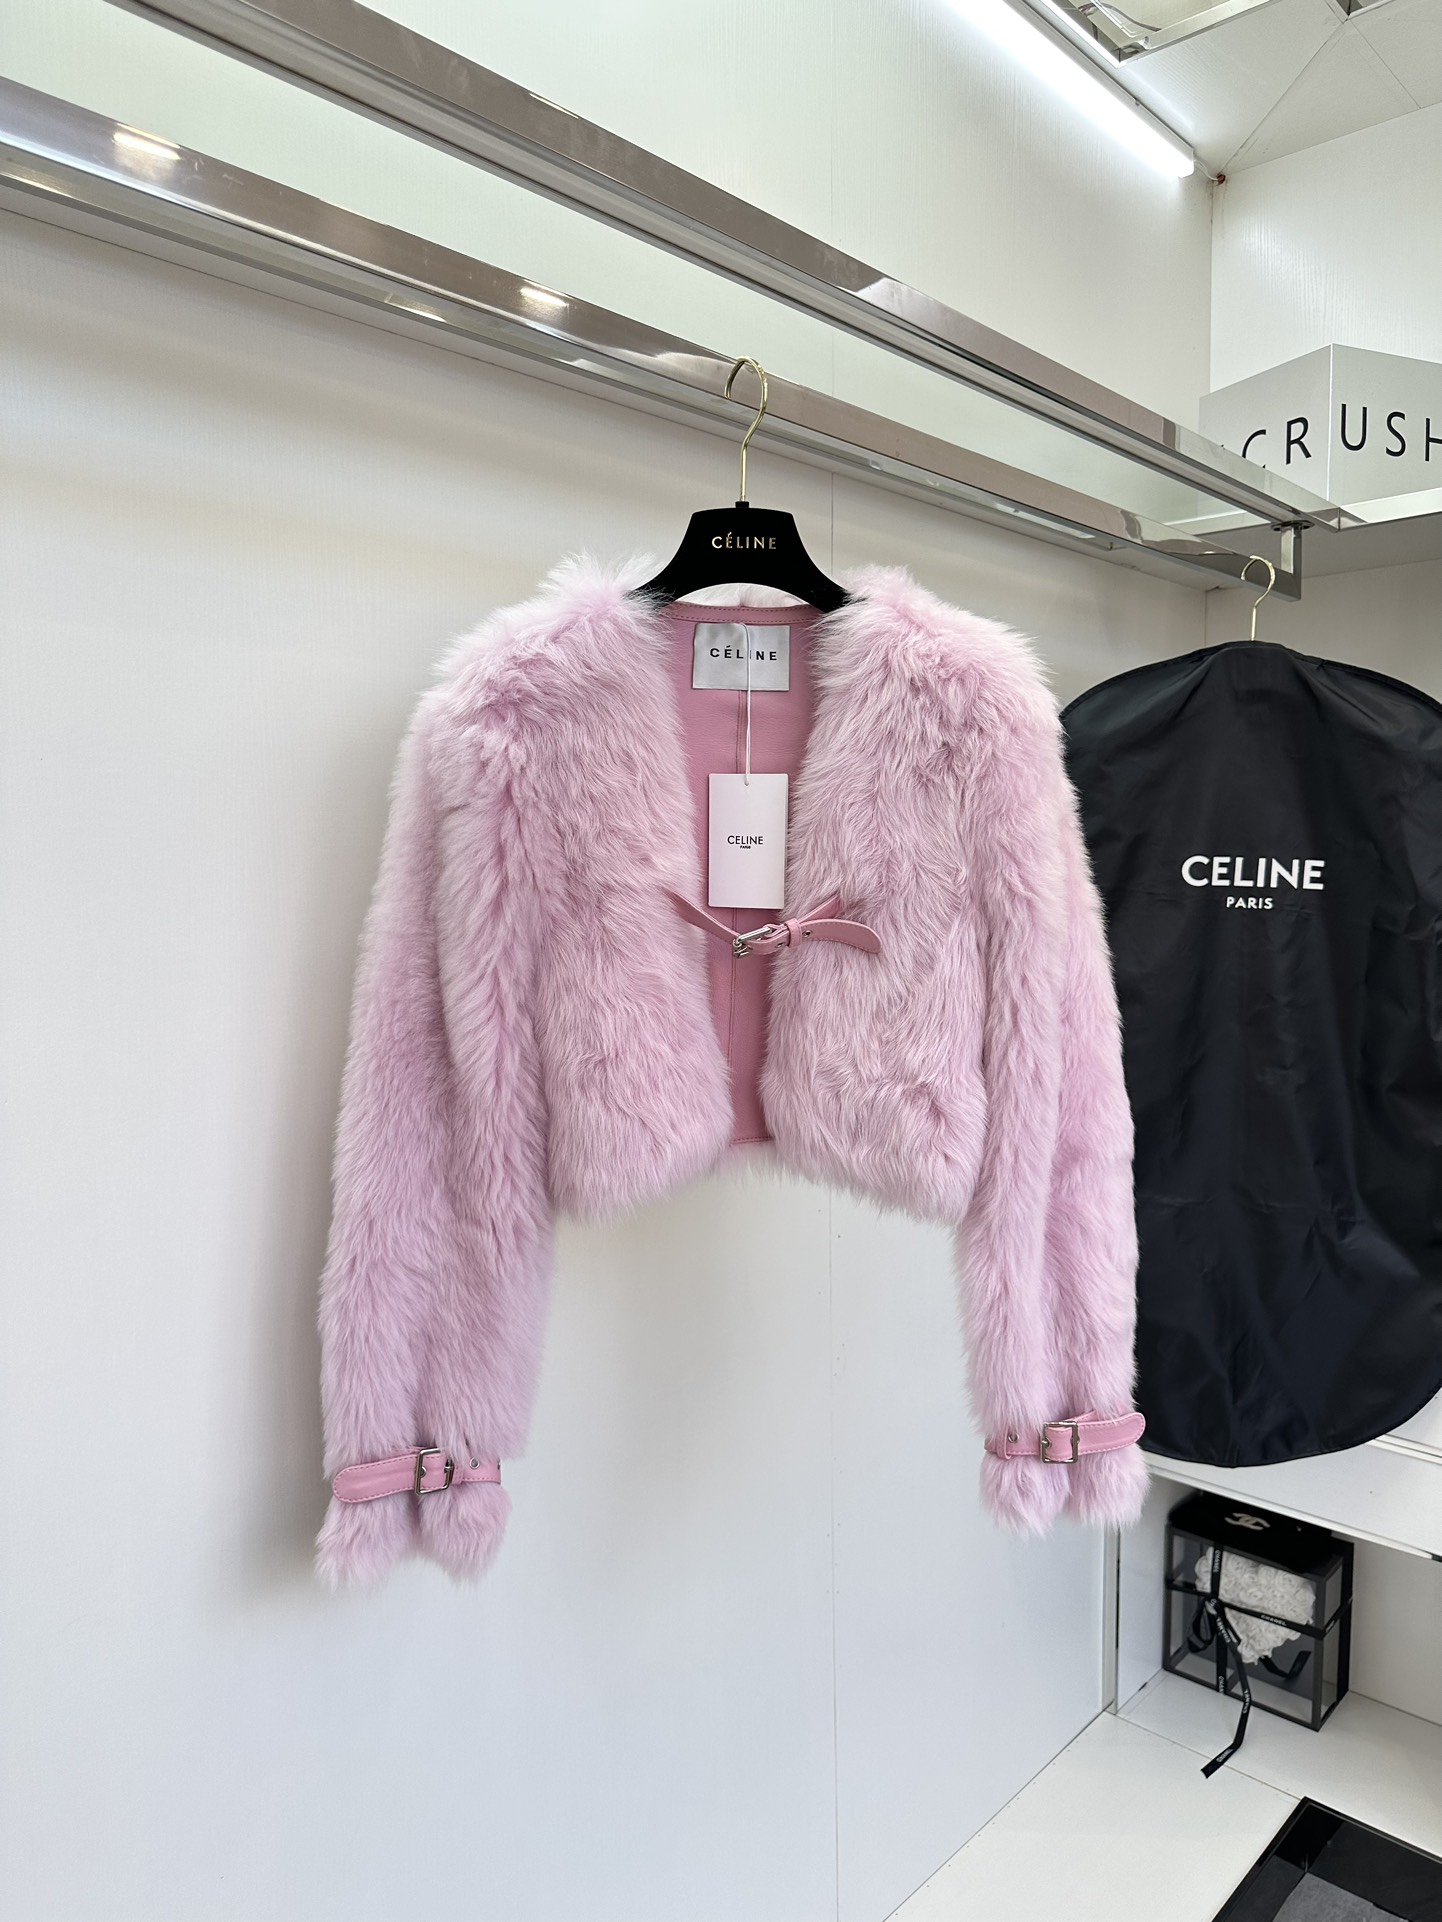 セリーヌ ジャンパー偽物 鮮やかな色 イタリア製 高級品 もこもこ 暖かい ファッション レディース 3色可選 ピンク_7